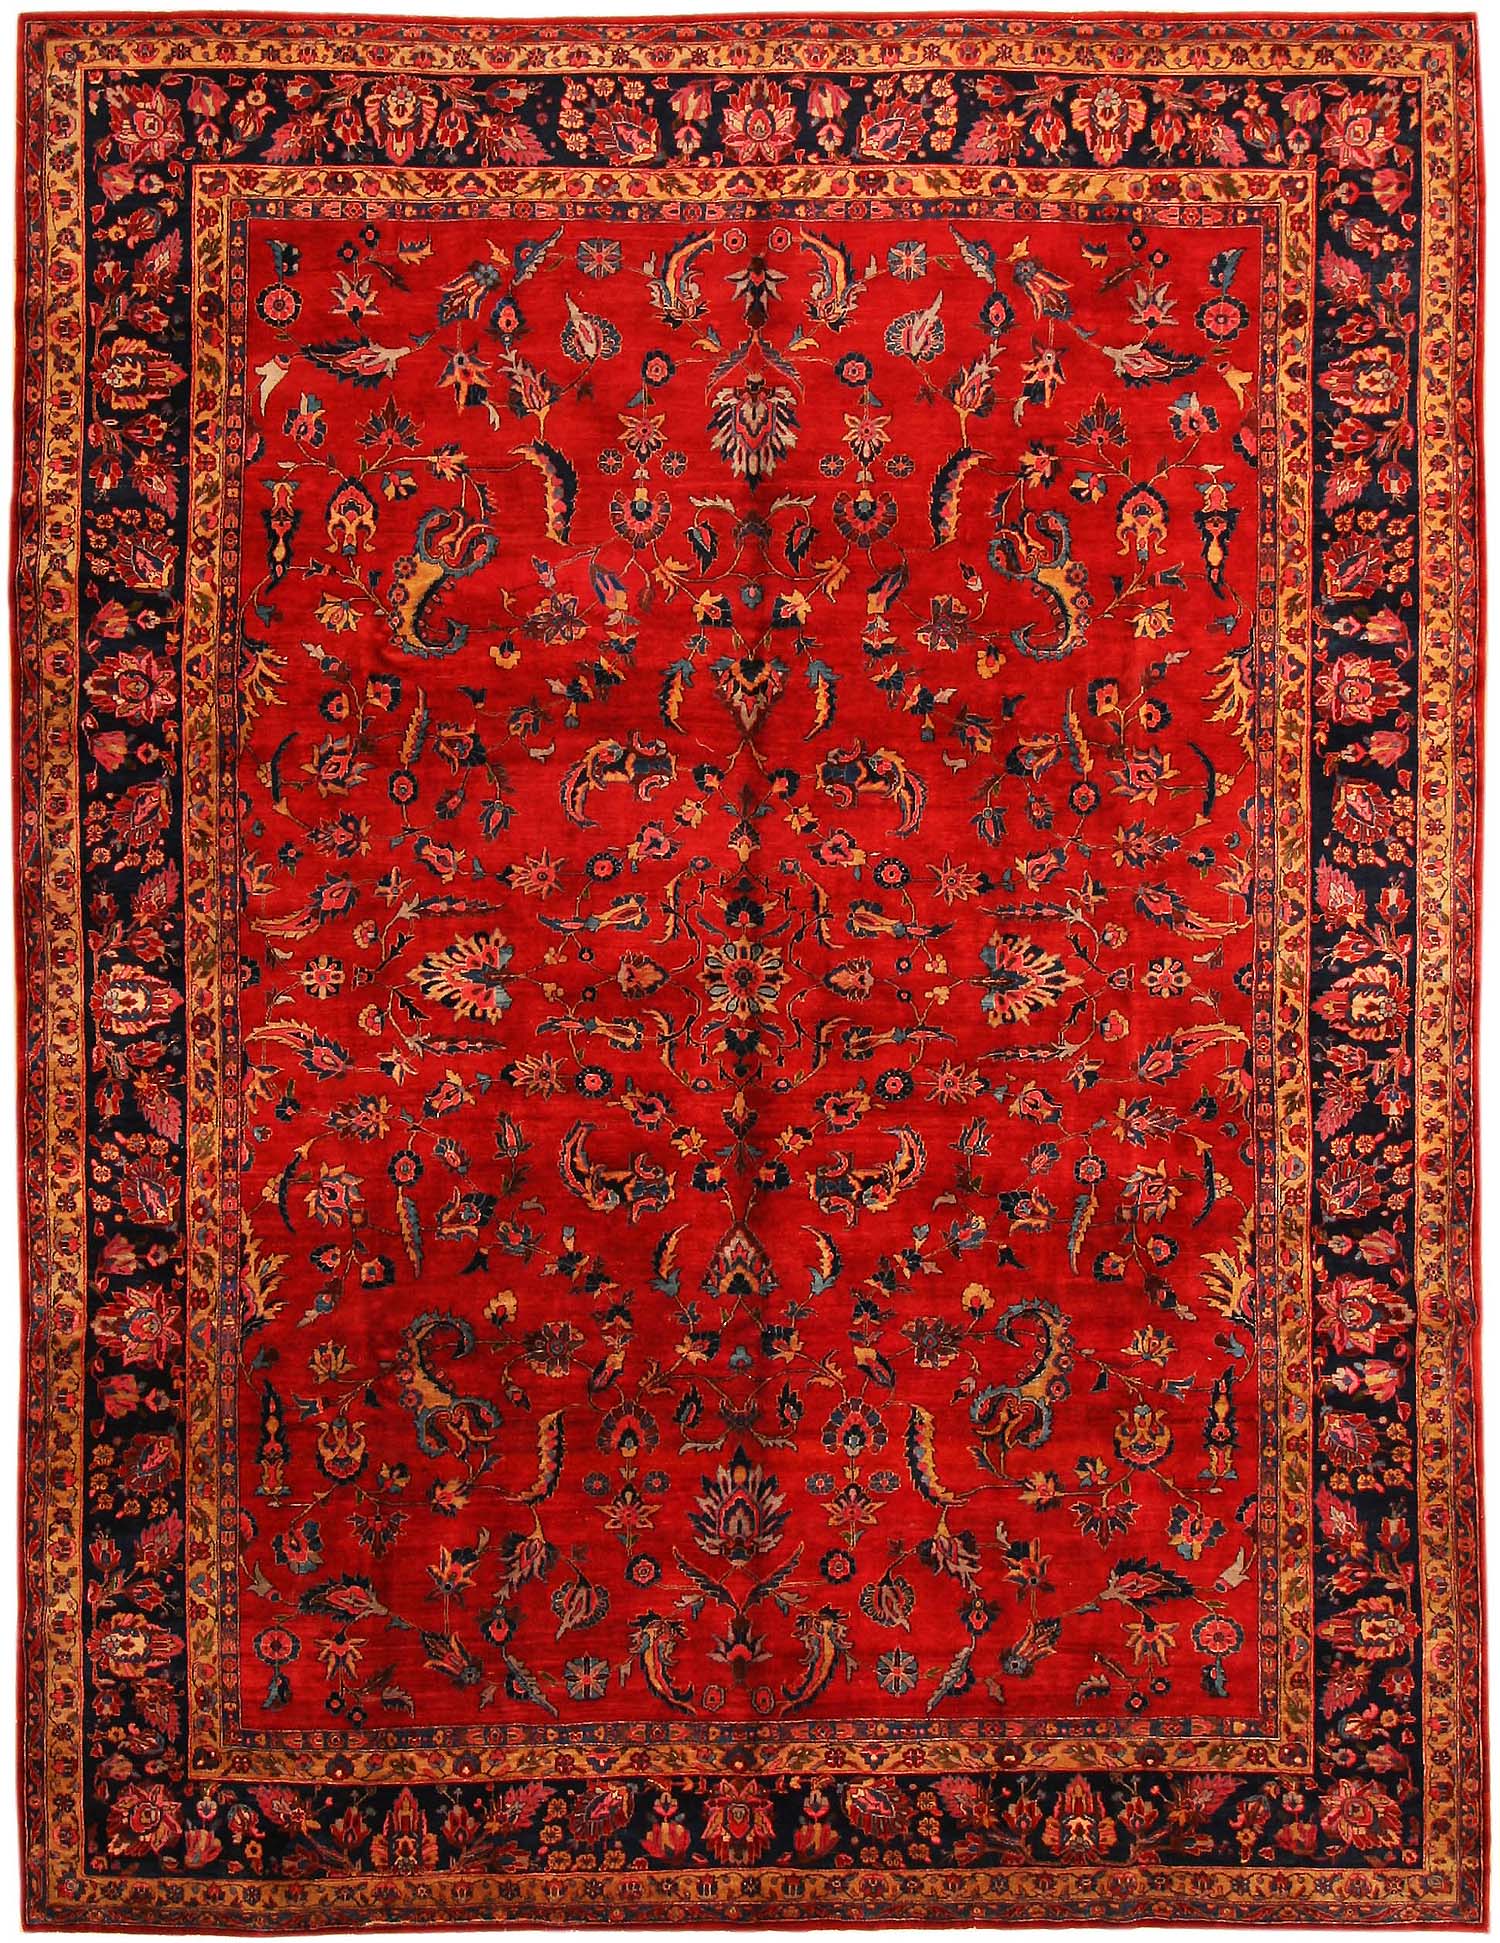 Amazing Antique Sarouk Persian Rug red persian rug